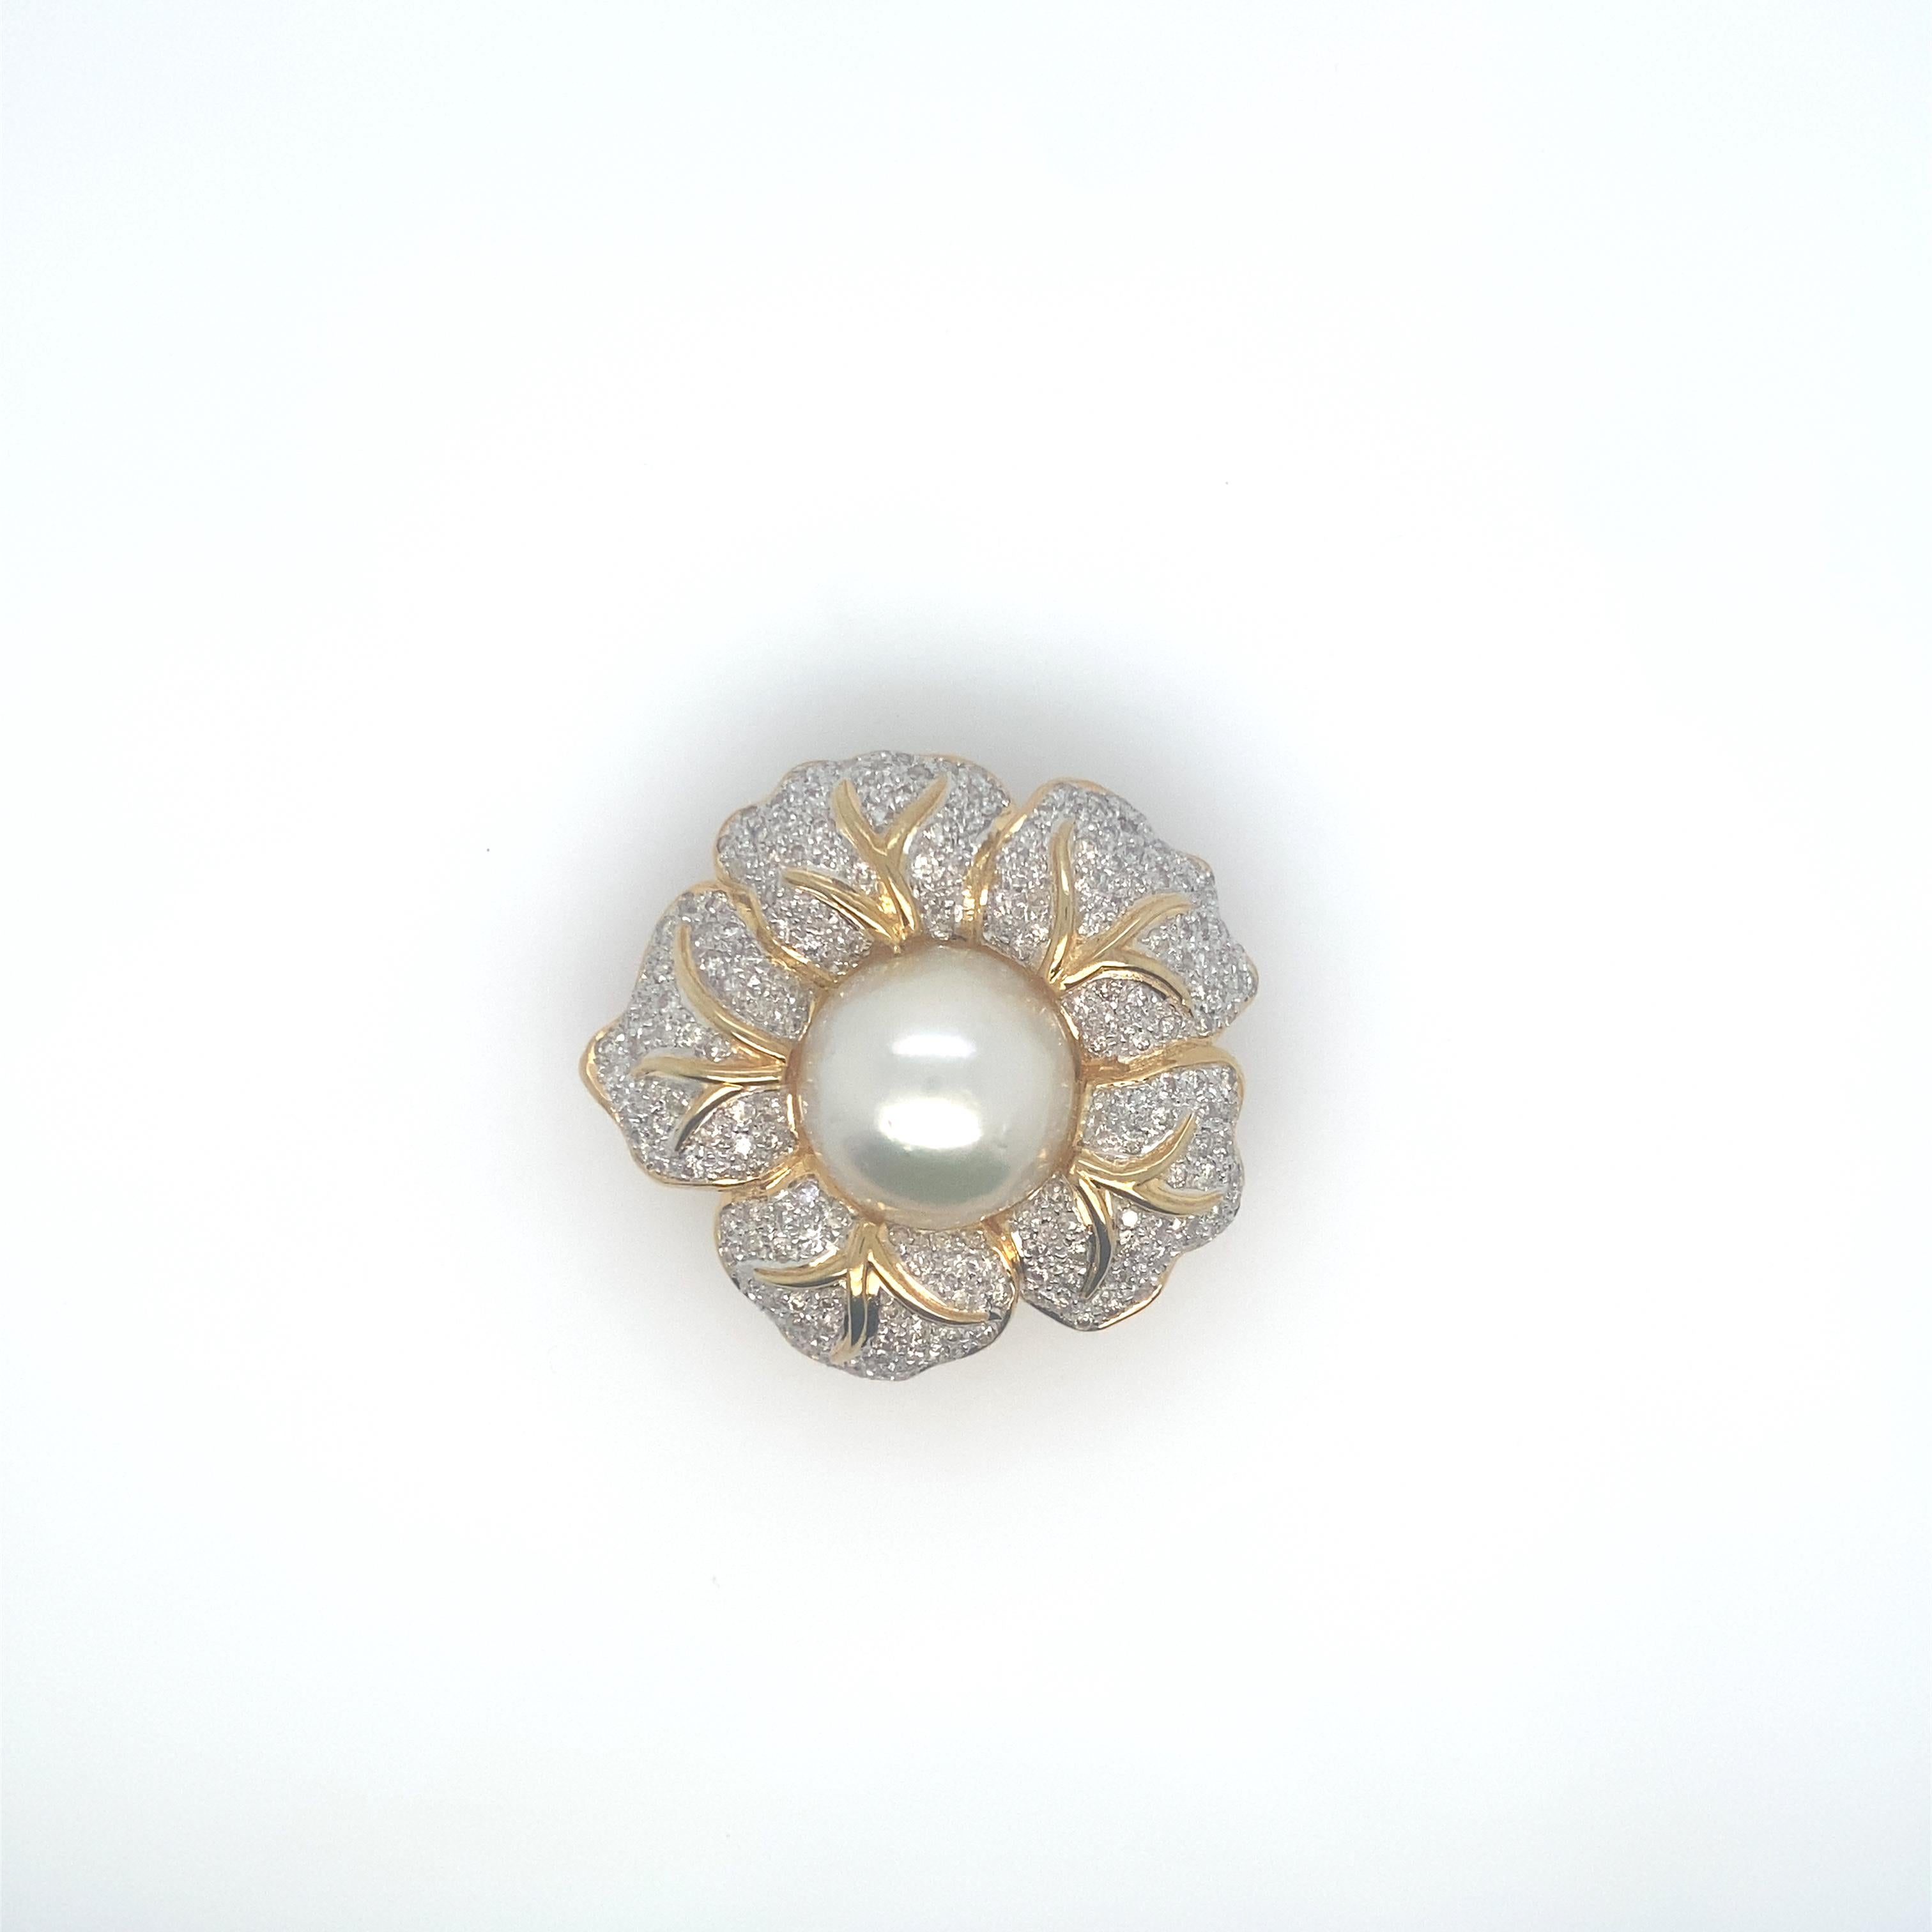 Wunderschöne große, seltene weiße Südsee-Tropfenperlen.  Diese spektakulären Perlen messen 14,5 mm - 18,35 mm.  Sie sind von sehr weißer Farbe, haben einen sehr hohen Glanz und einige Schönheitsfehler.  Die Halskette mit einem der Verschlüsse auf